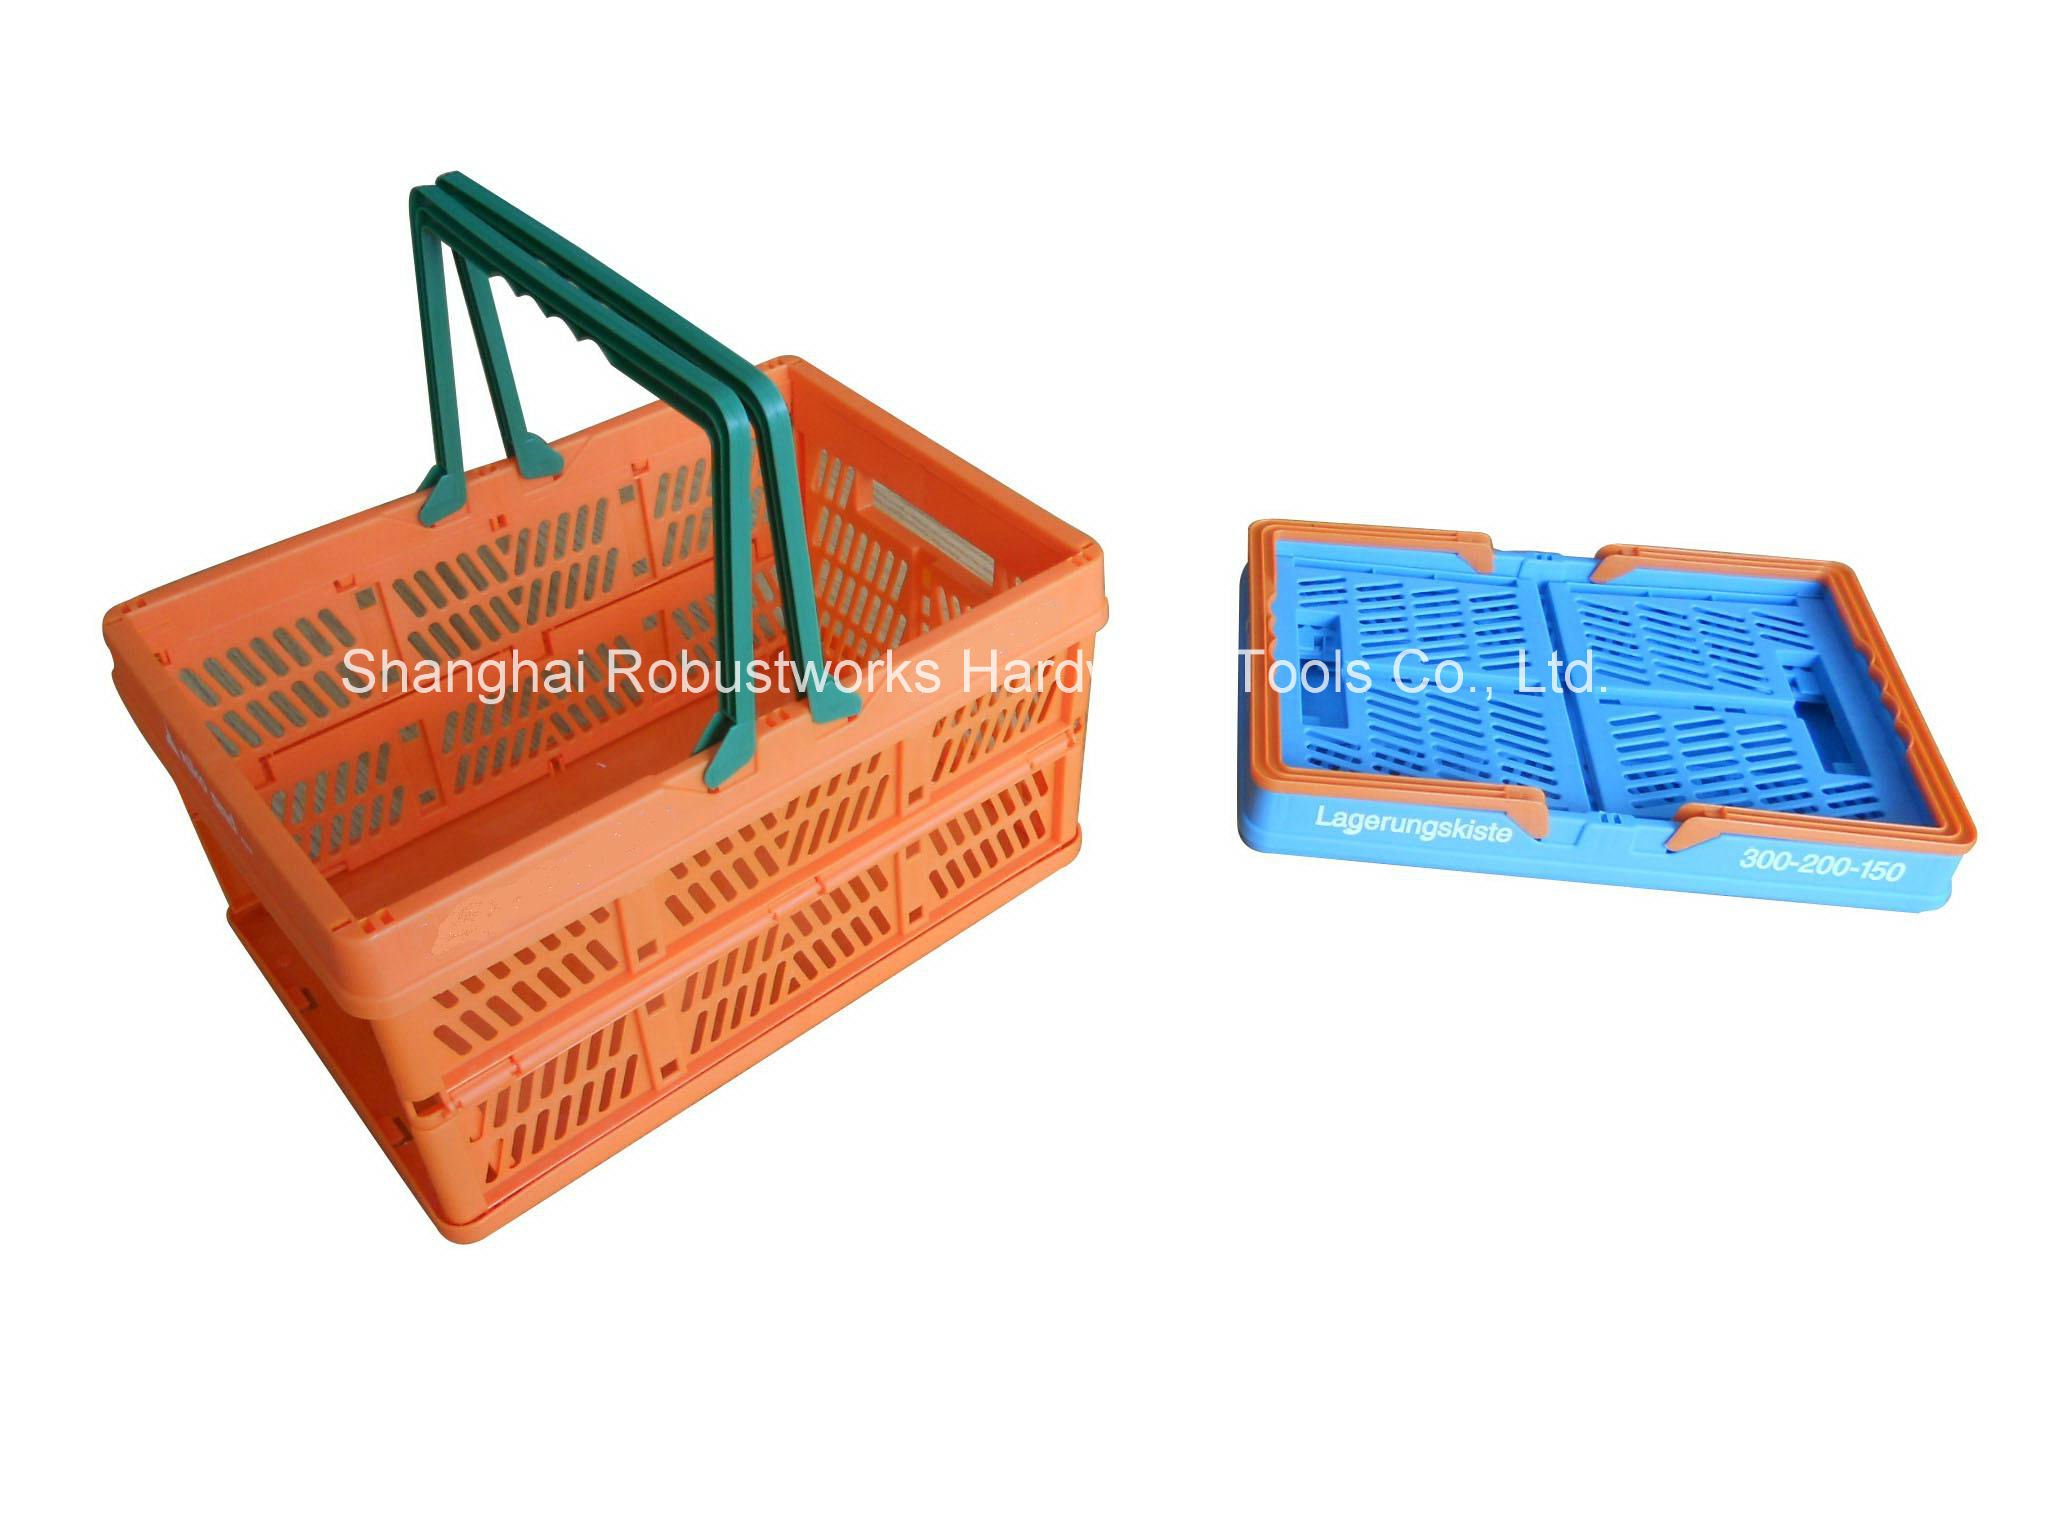 Large Size Plastic Folding Basket (FB003)